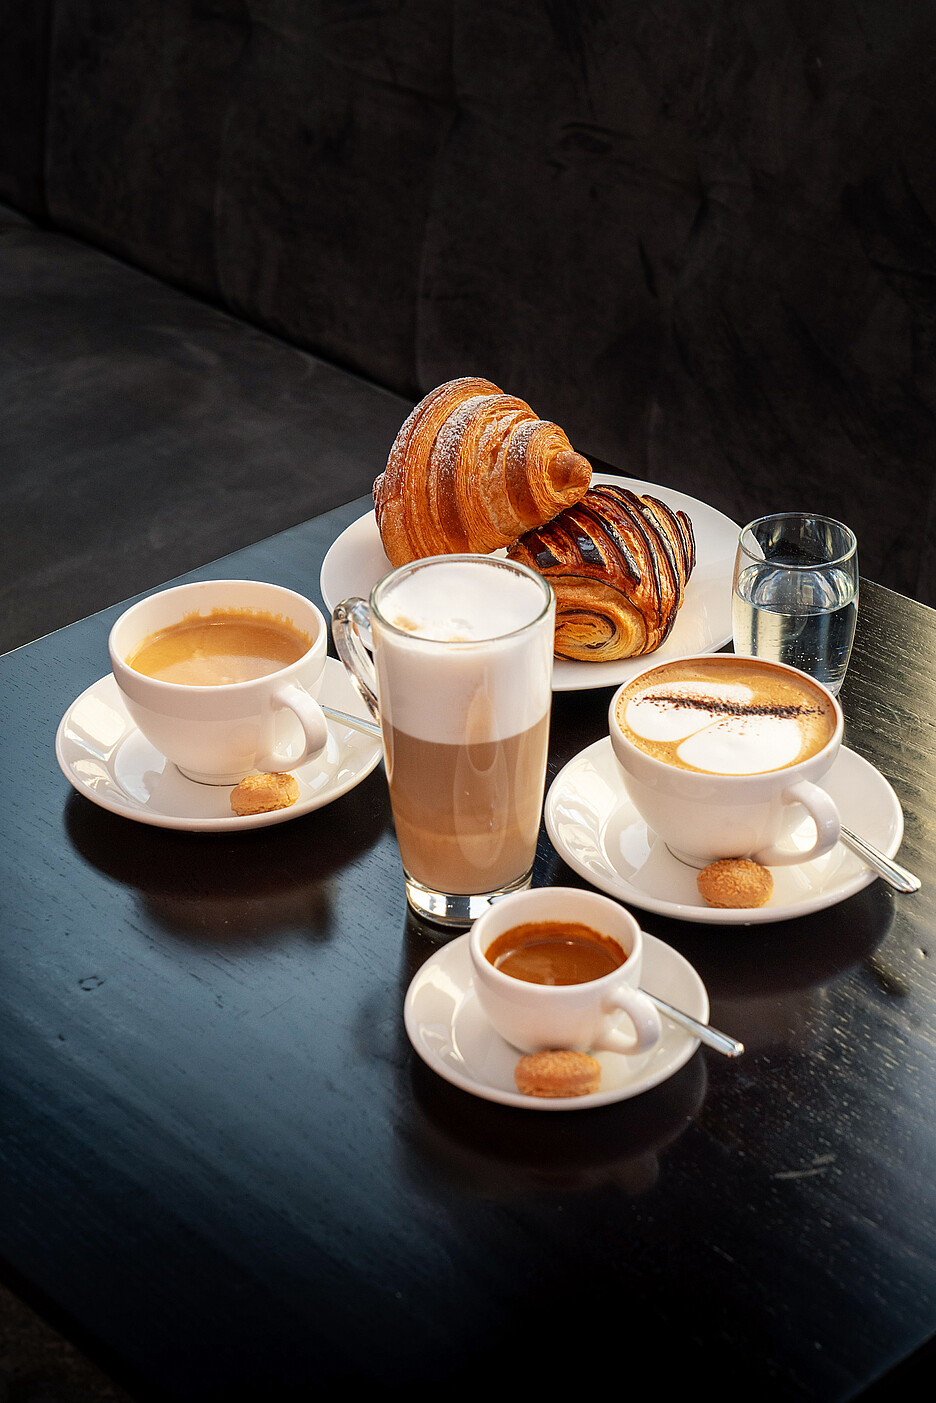 Ausgewählte Köstlichkeiten in Begleitung feinsten Kaffees aus einer XT8 von Cafina mit TopFoam, dem bewährten Milchschaum, standfest und mit viel Geschmack.